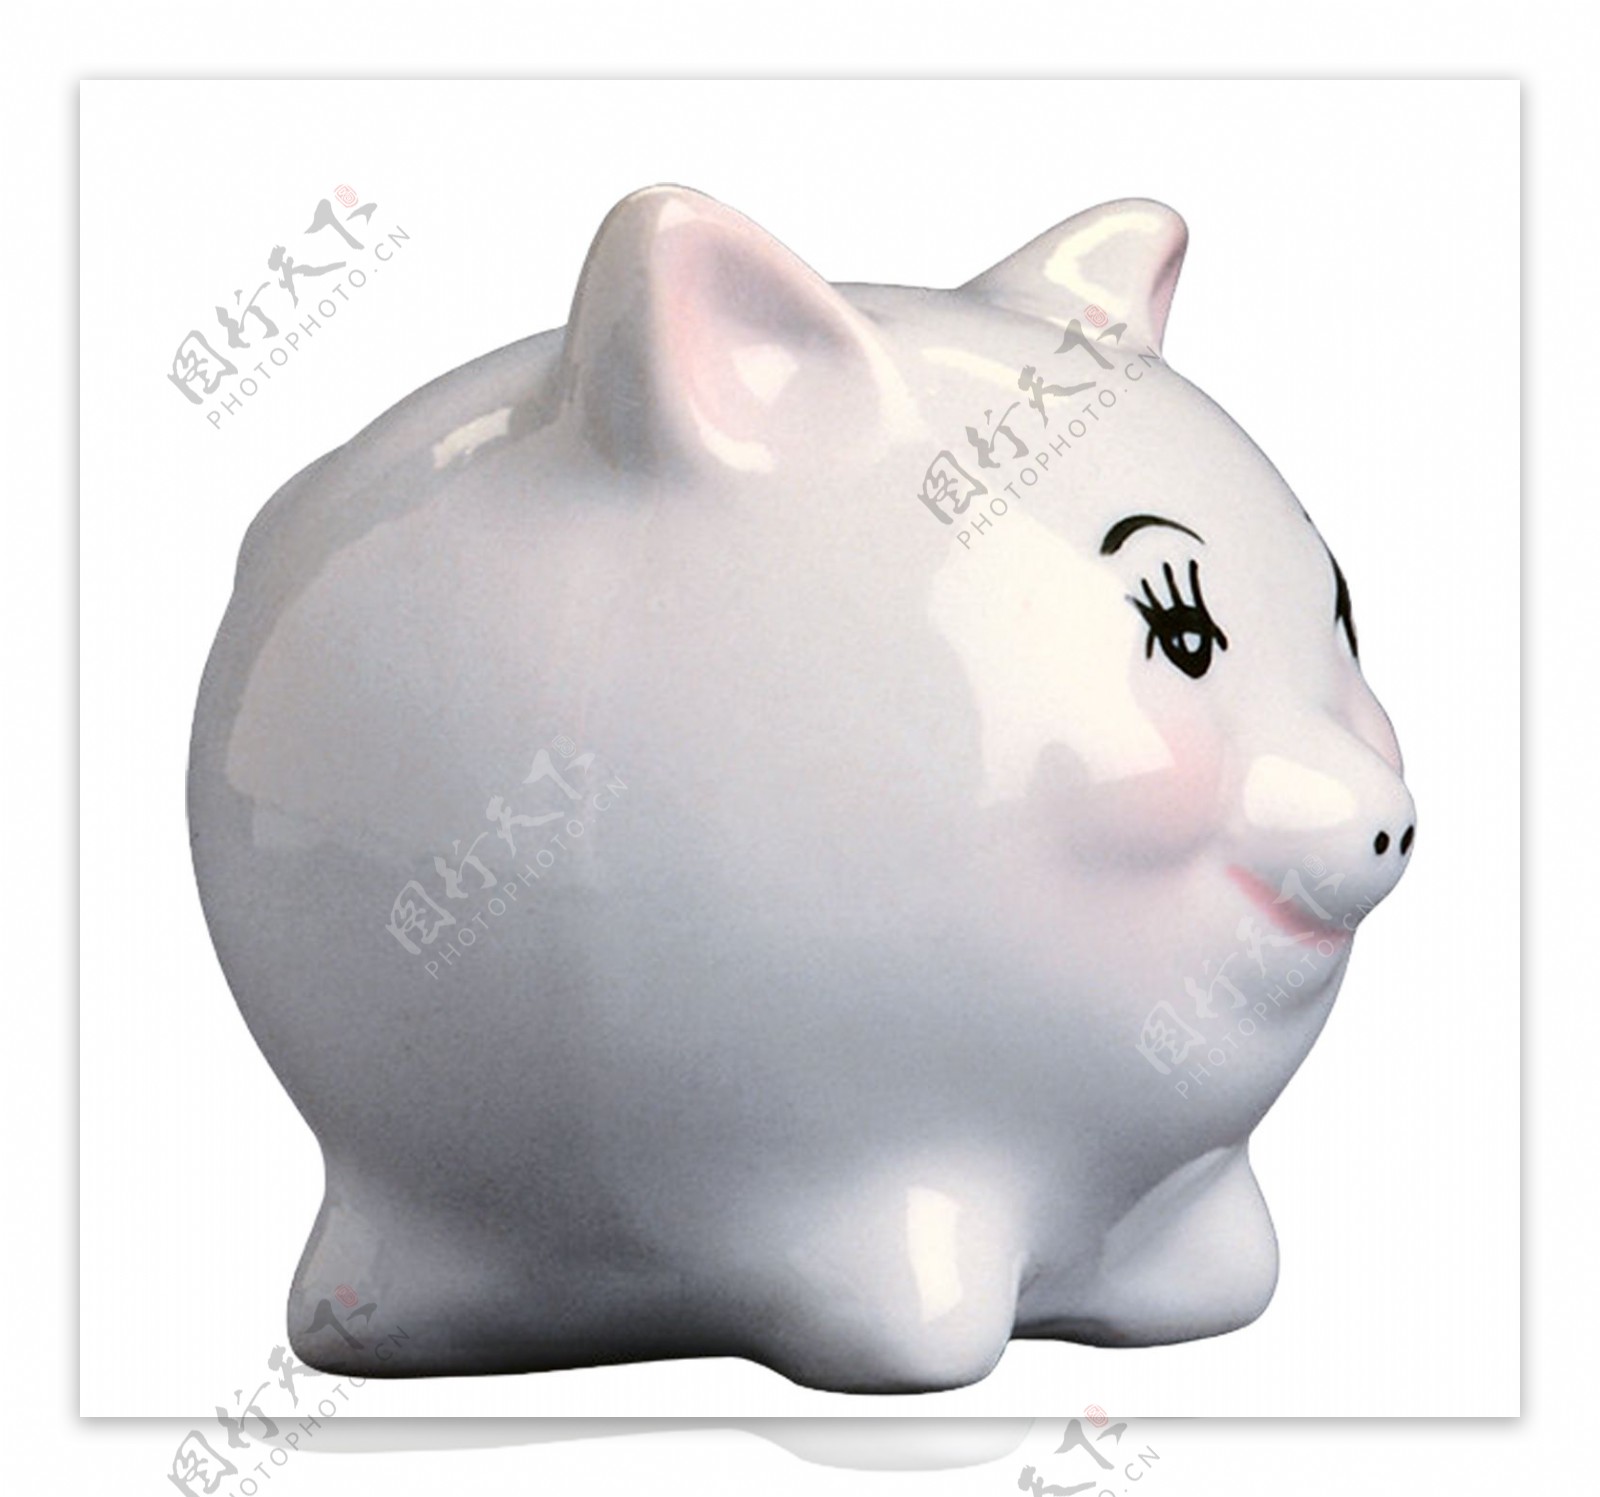 白色陶瓷储钱猪图片